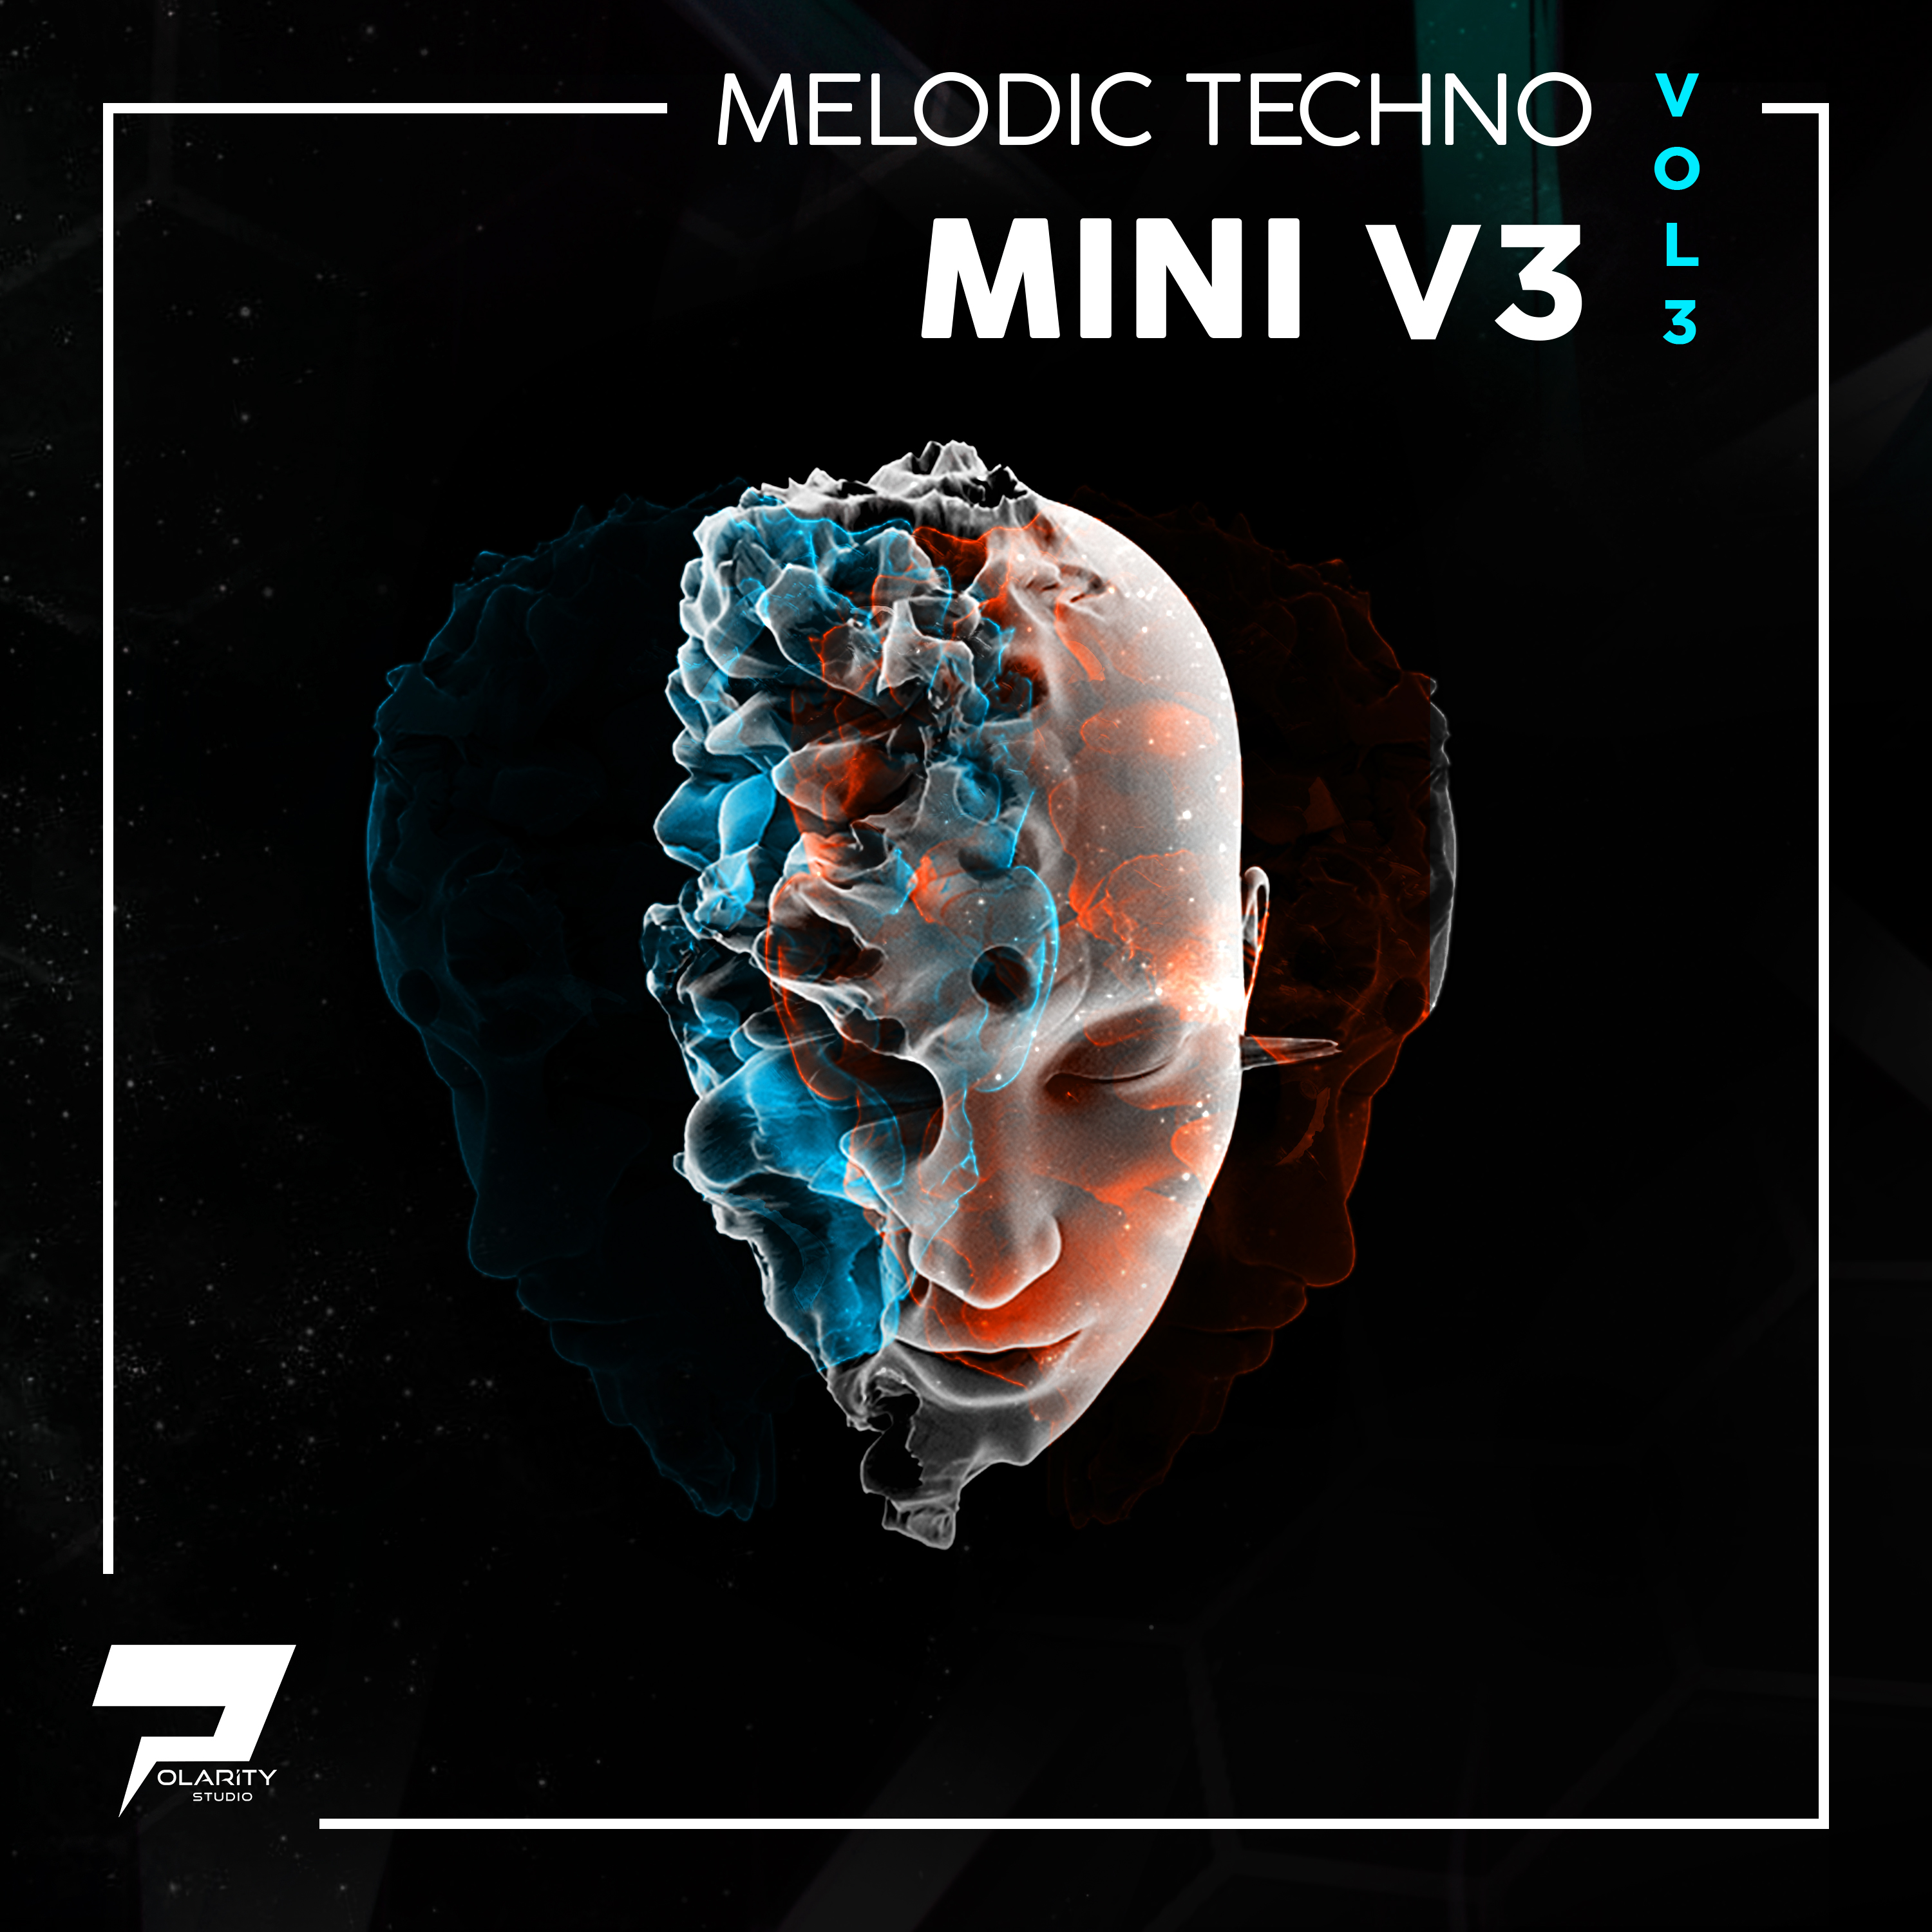 Polarity Studio - Melodic Techno - Mini V3 Vol. 3